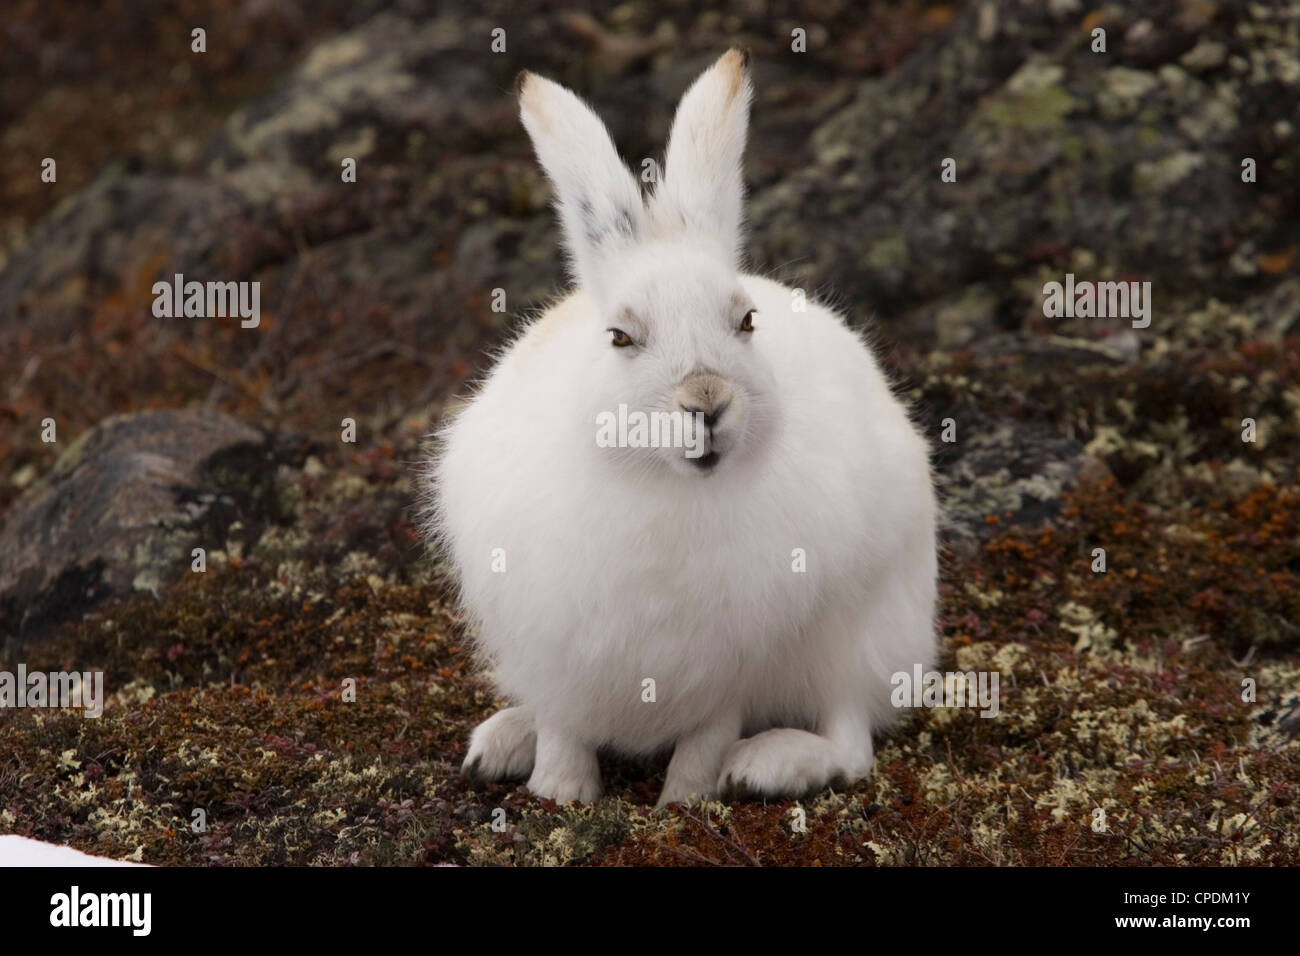 rabbit arctic hare bunny snow white rabbit hop Stock Photo